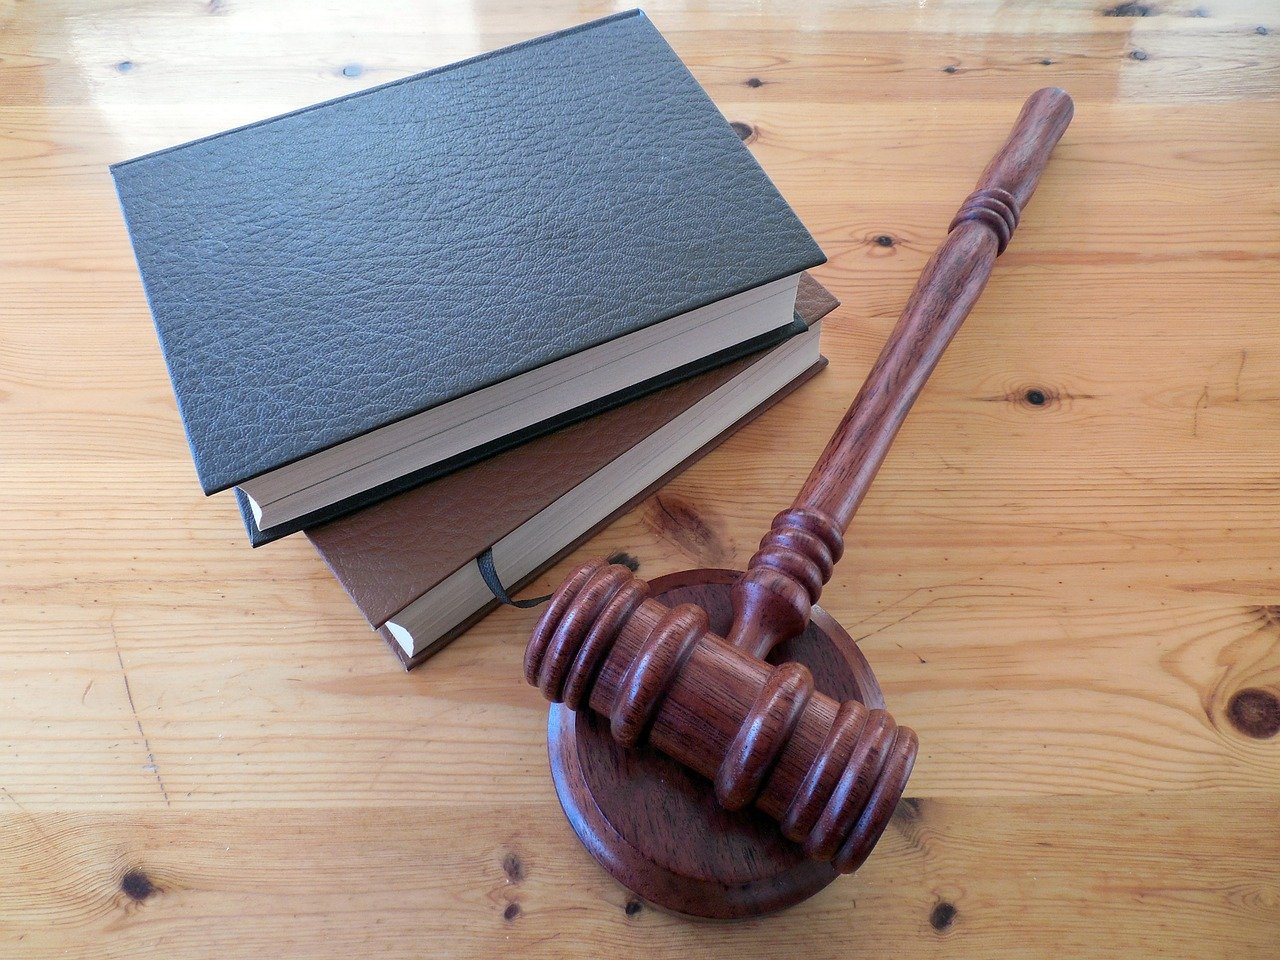 Бизнесмен Лалакин подаст в суд на «Новую газету»